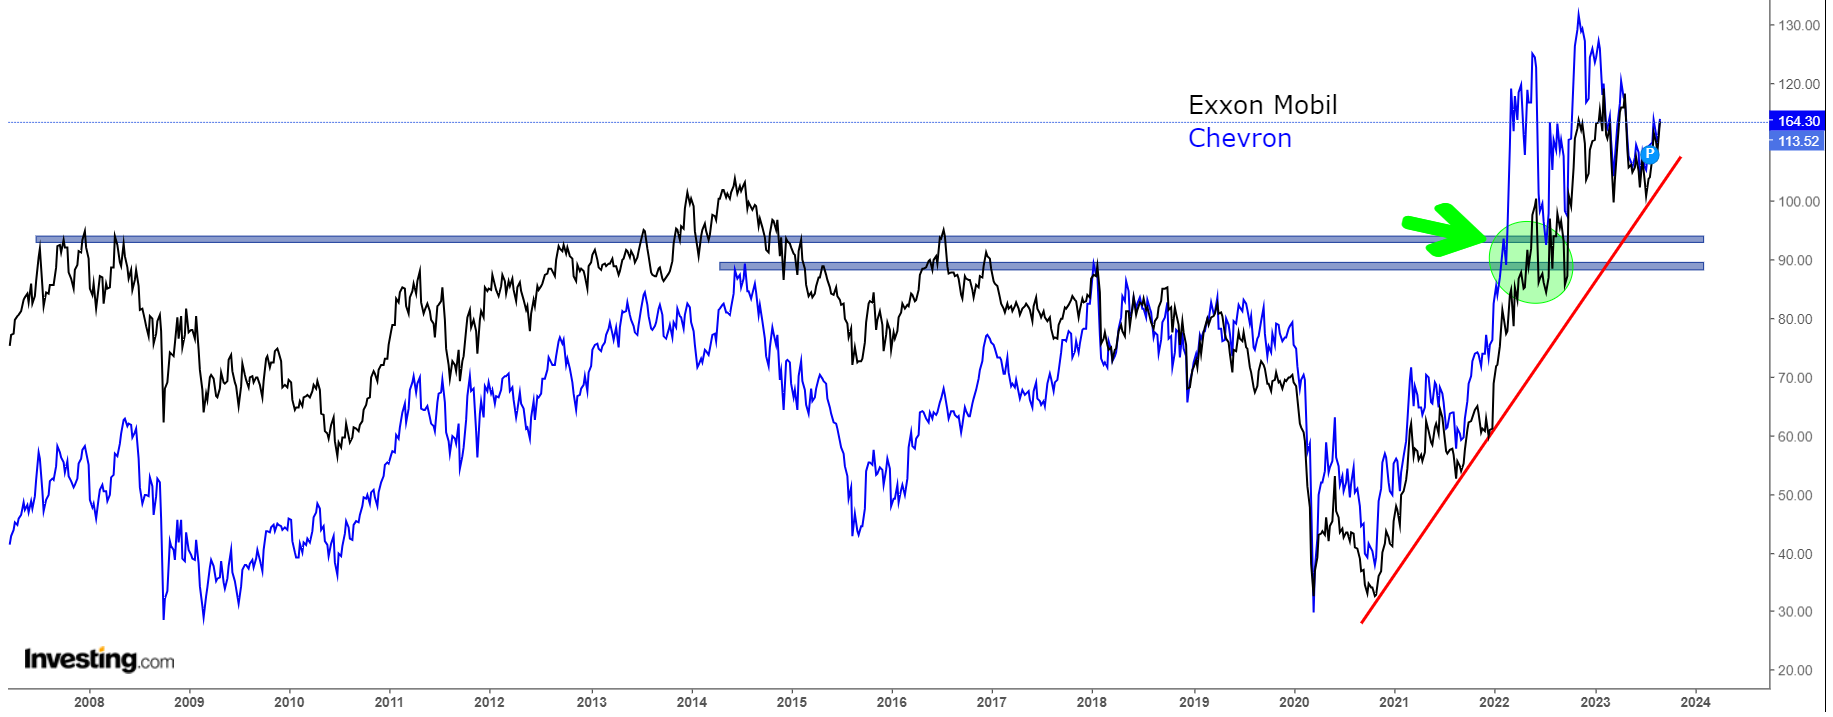 Descripción: Exxon Mobil, Chevron Stock Charts